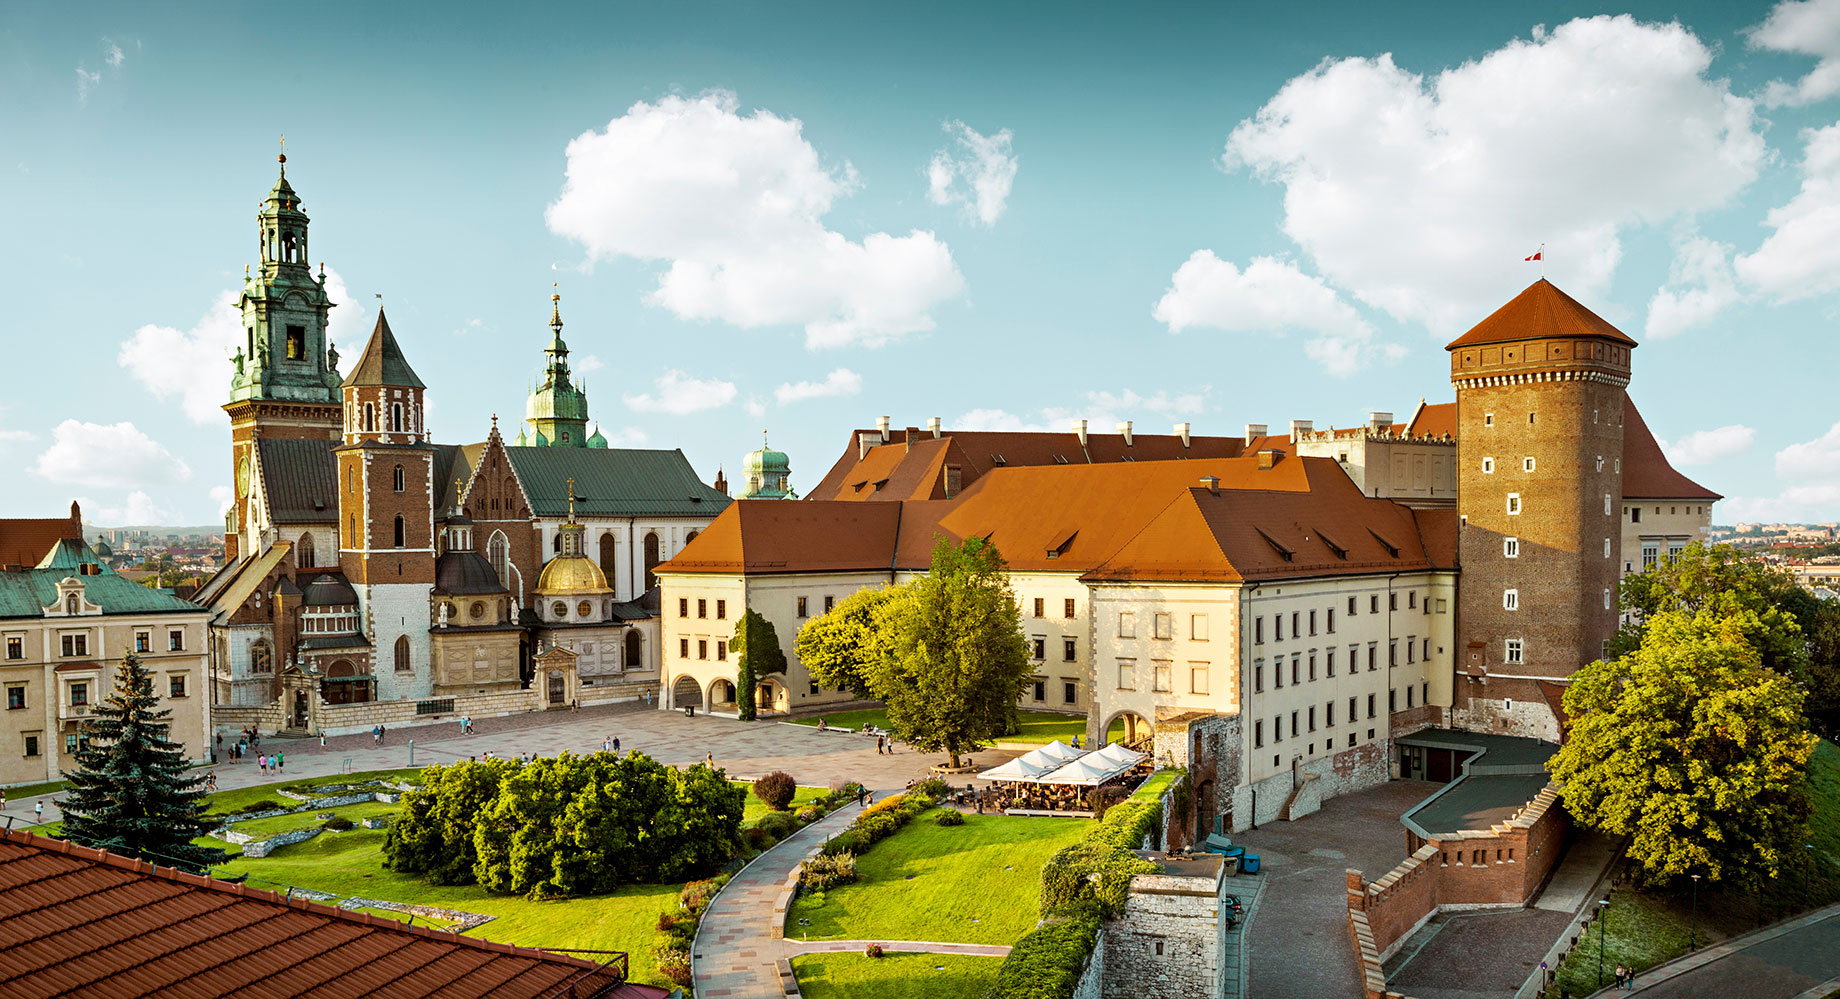 Wawel Castle - Kraków, Poland